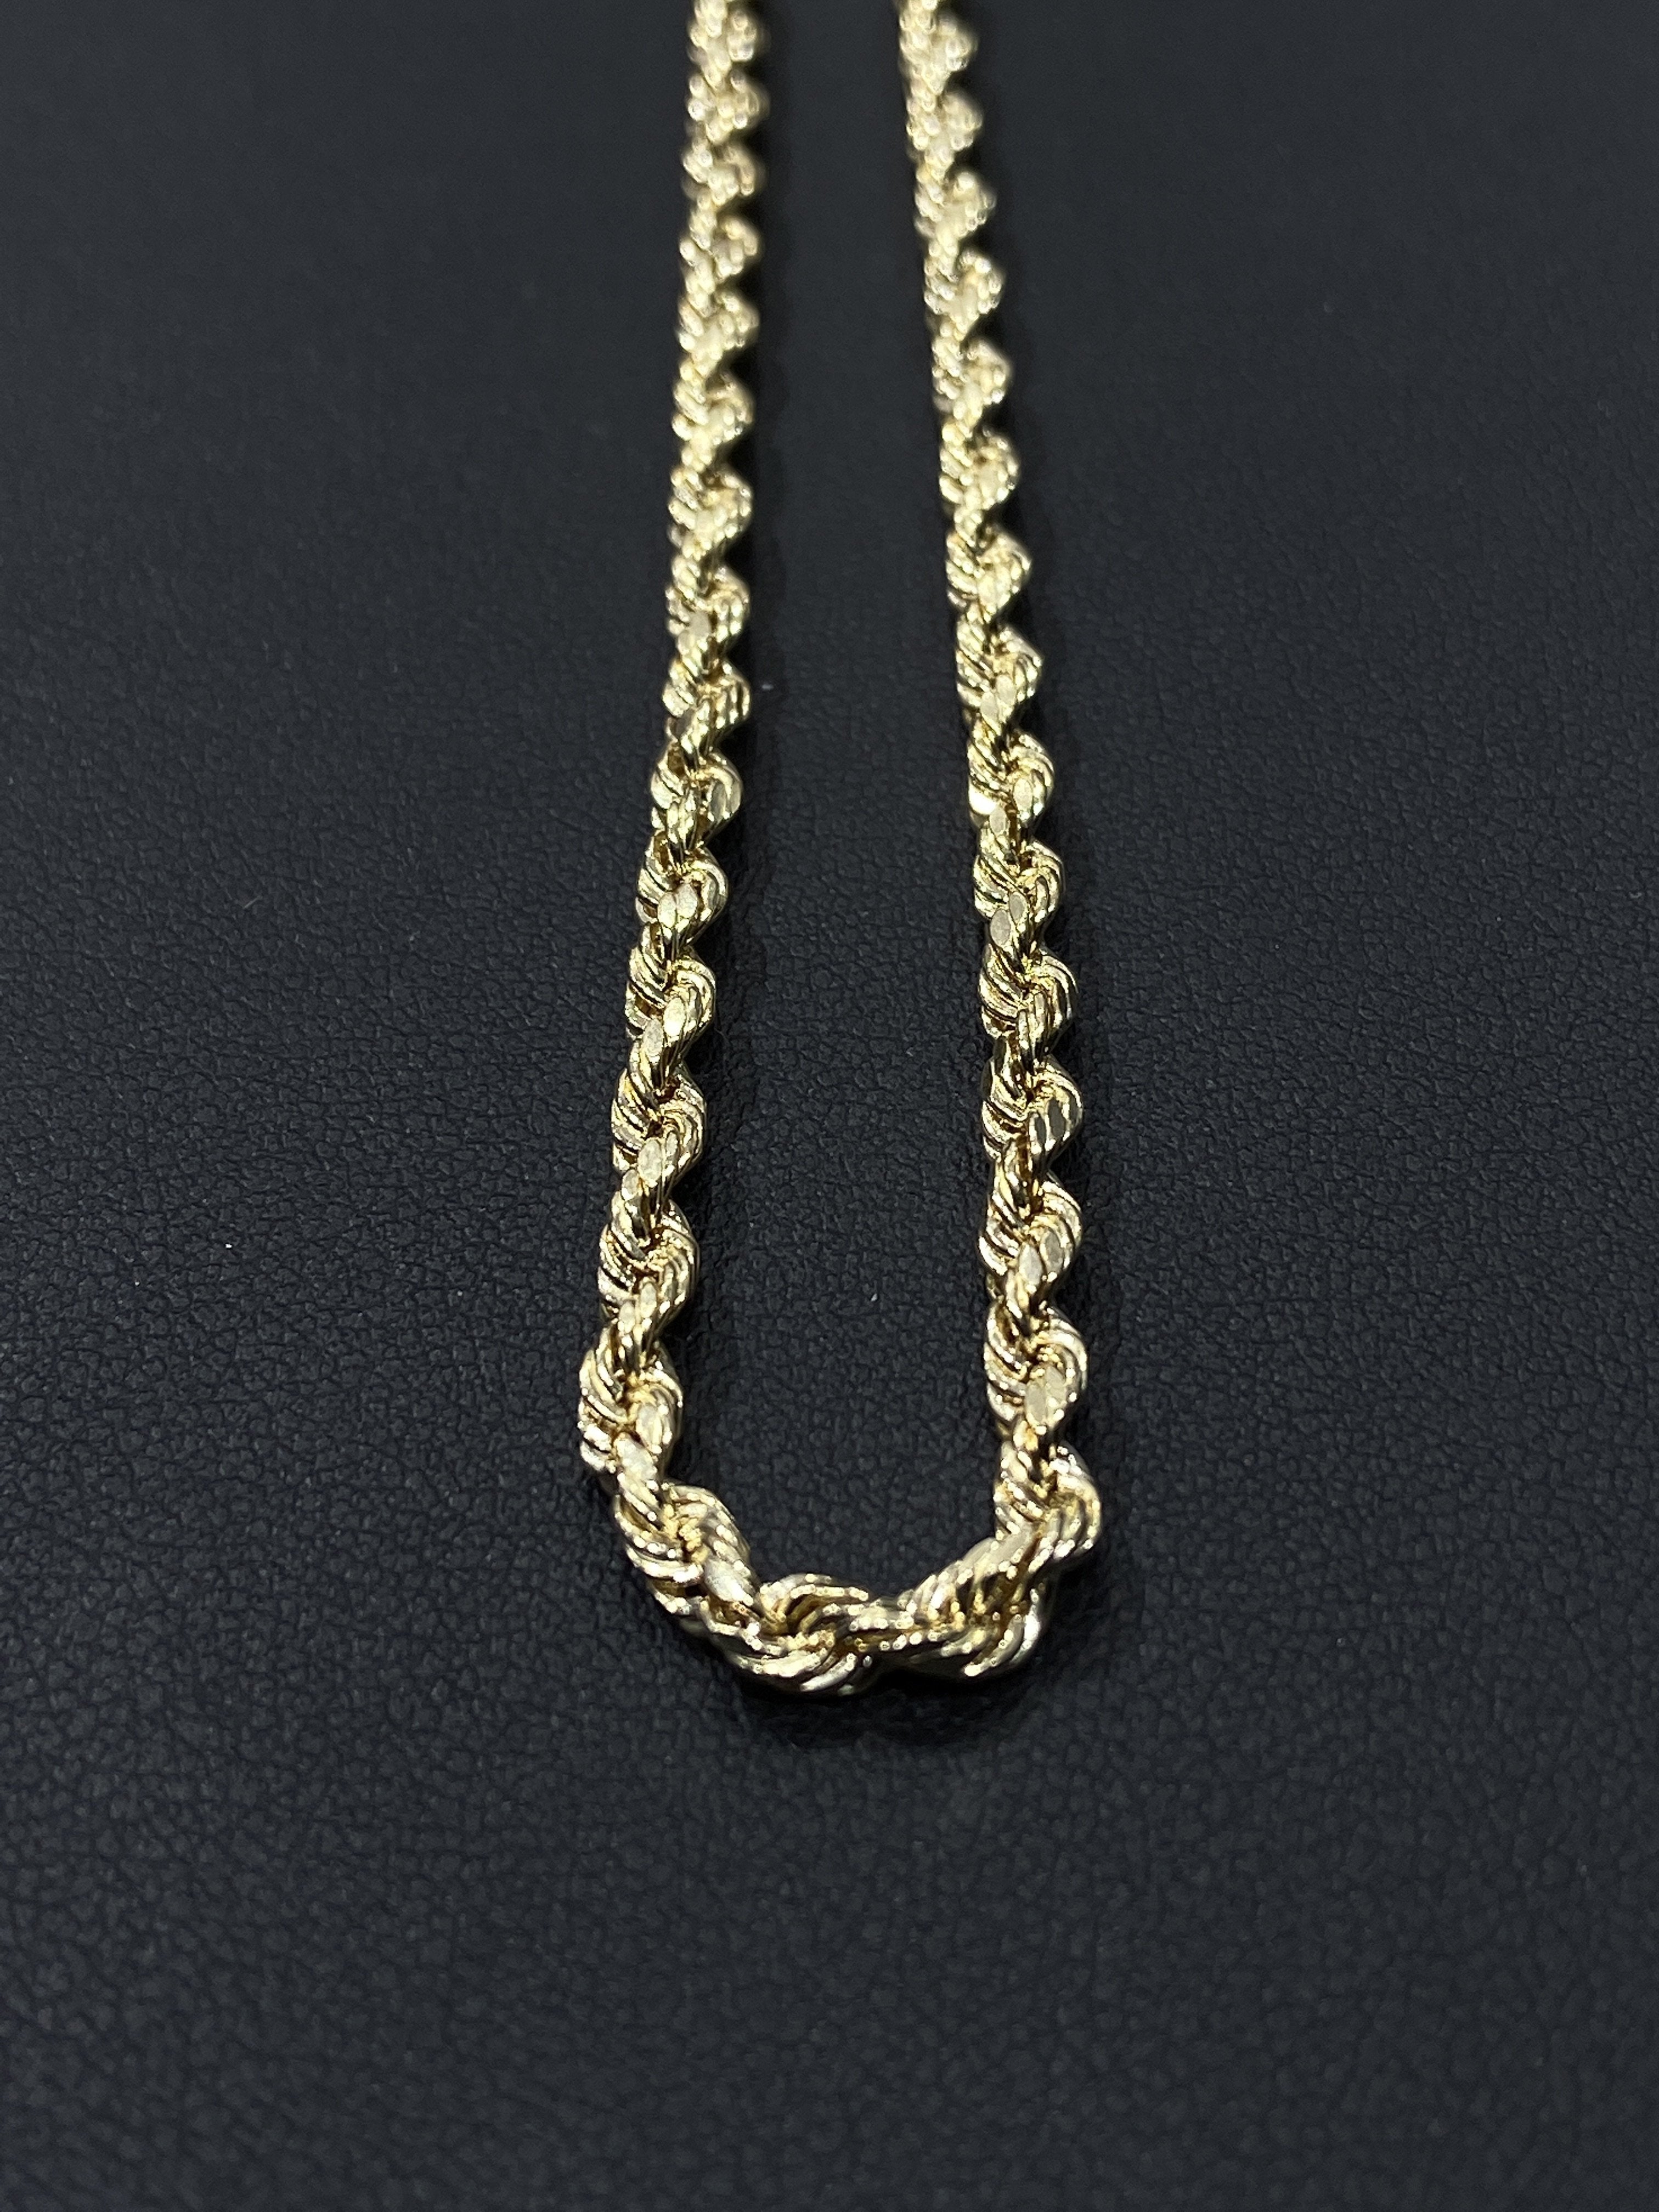 14K Gold Rope Chain (Regular)- 6mm - White Carat Diamonds 